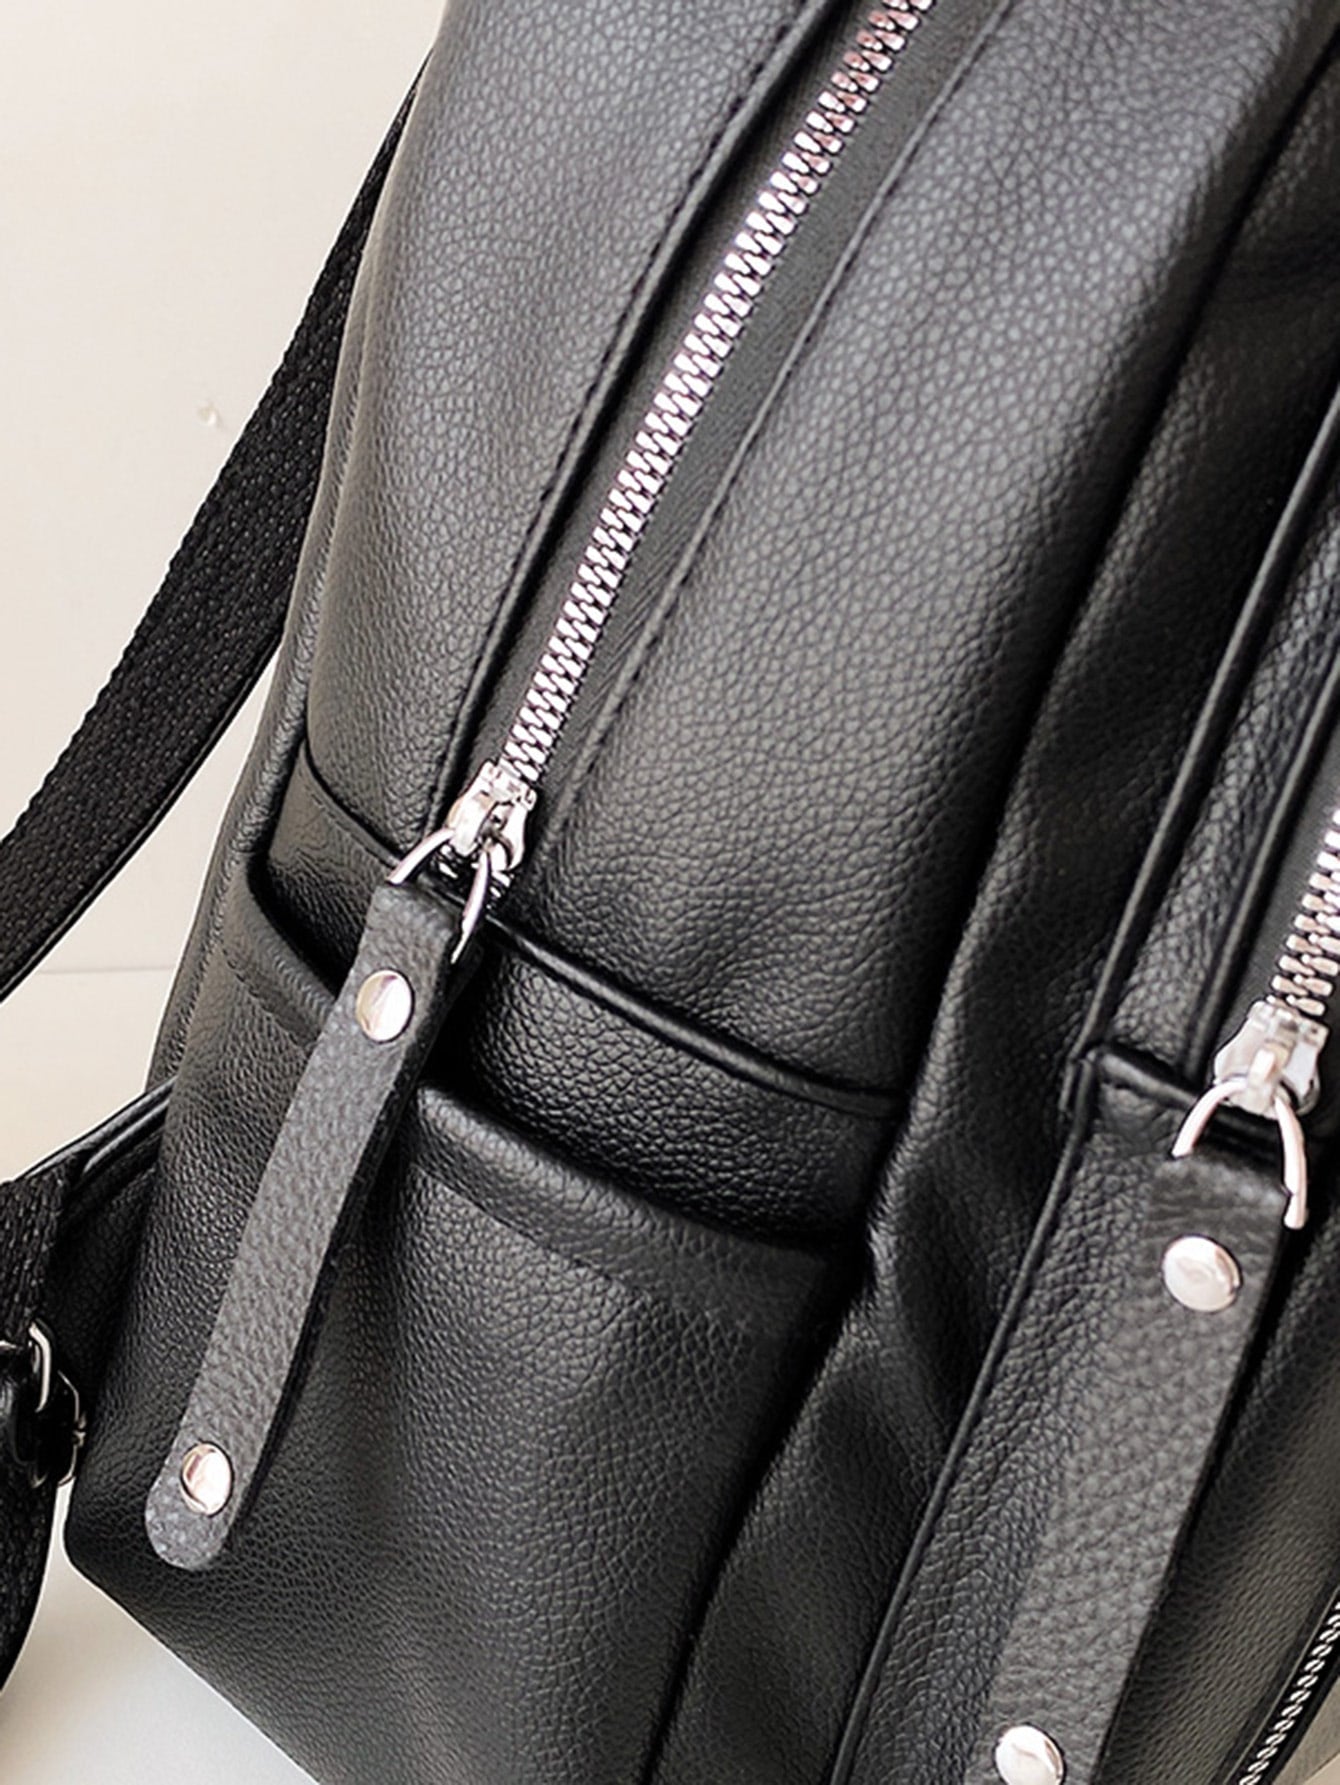 Double Zip Front Backpack